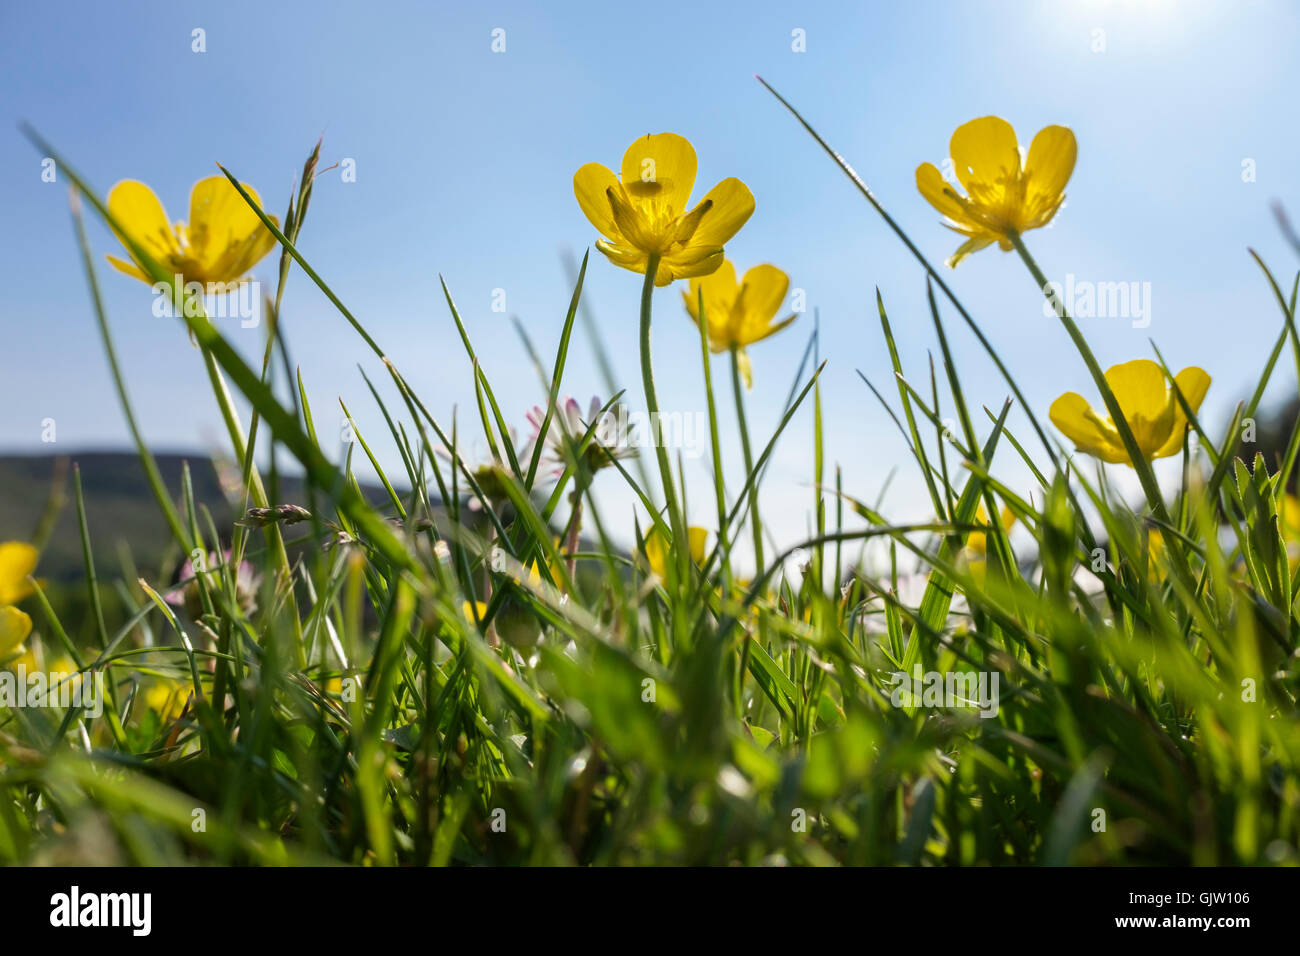 Die froschperspektive von gelben Wiese Ranunkeln (Ranunculus acris) Blumen in Rasen Gras Hintergrundbeleuchtung durch Sonnenlicht vor blauem Himmel im Sommer wachsen. Großbritannien Stockfoto